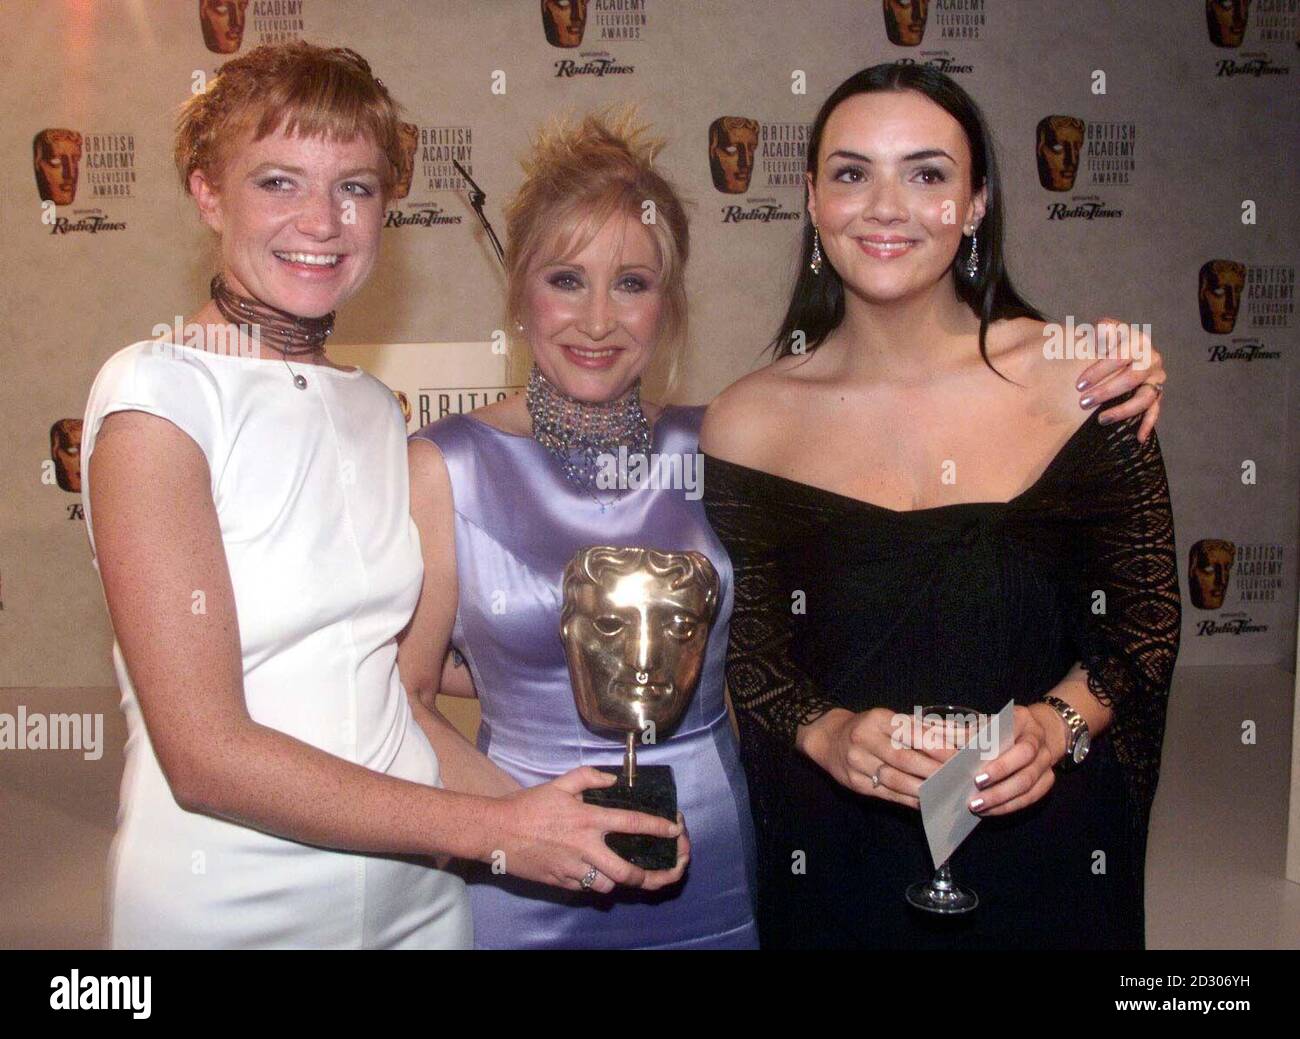 EastEnders membres passés et présents de la troupe (gauche - droite) Patsy Palmer, Carol Harrison et Martine McCutcheon aux British Academy Television Awards à l'hôtel Grosvenor House de Londres. Banque D'Images